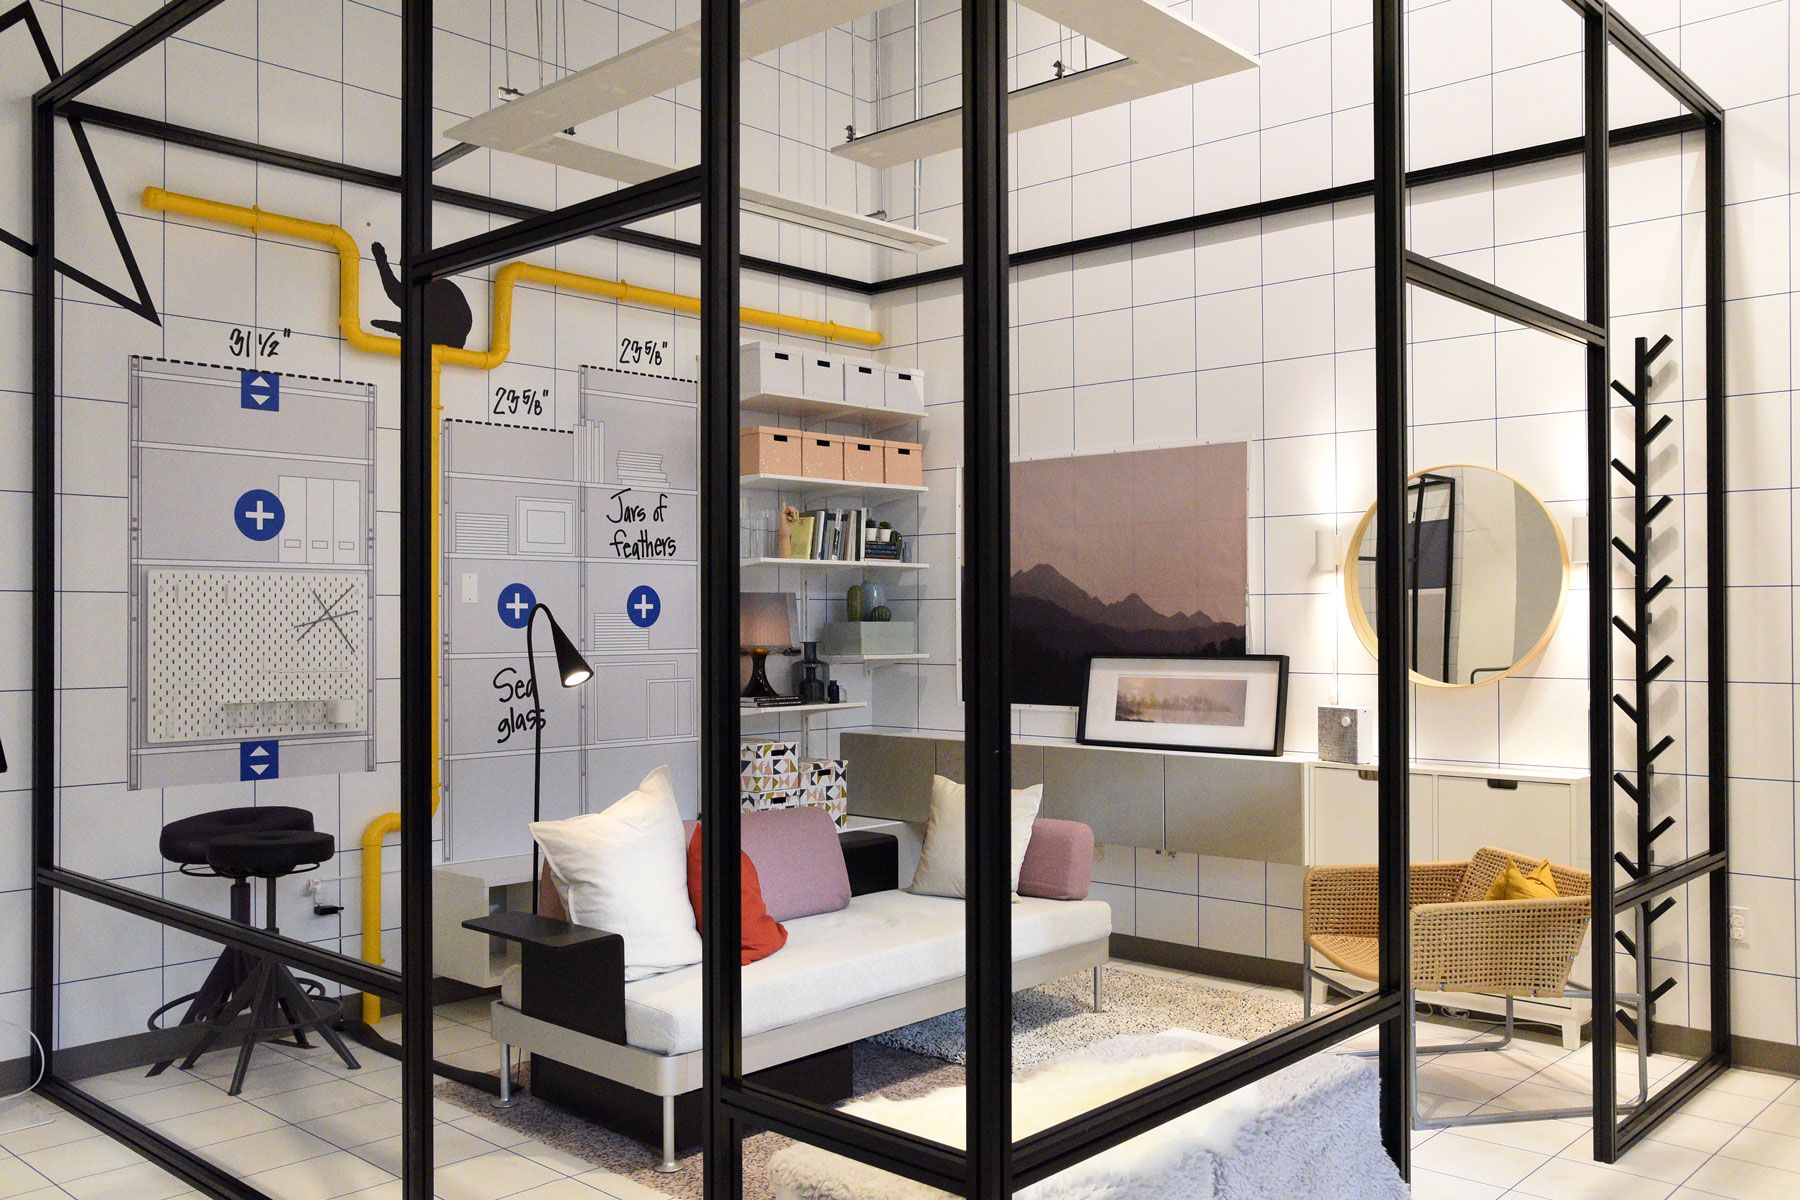 IKEA áruház / Tervező Stúdió - New York Tervező Stúdió földszintje